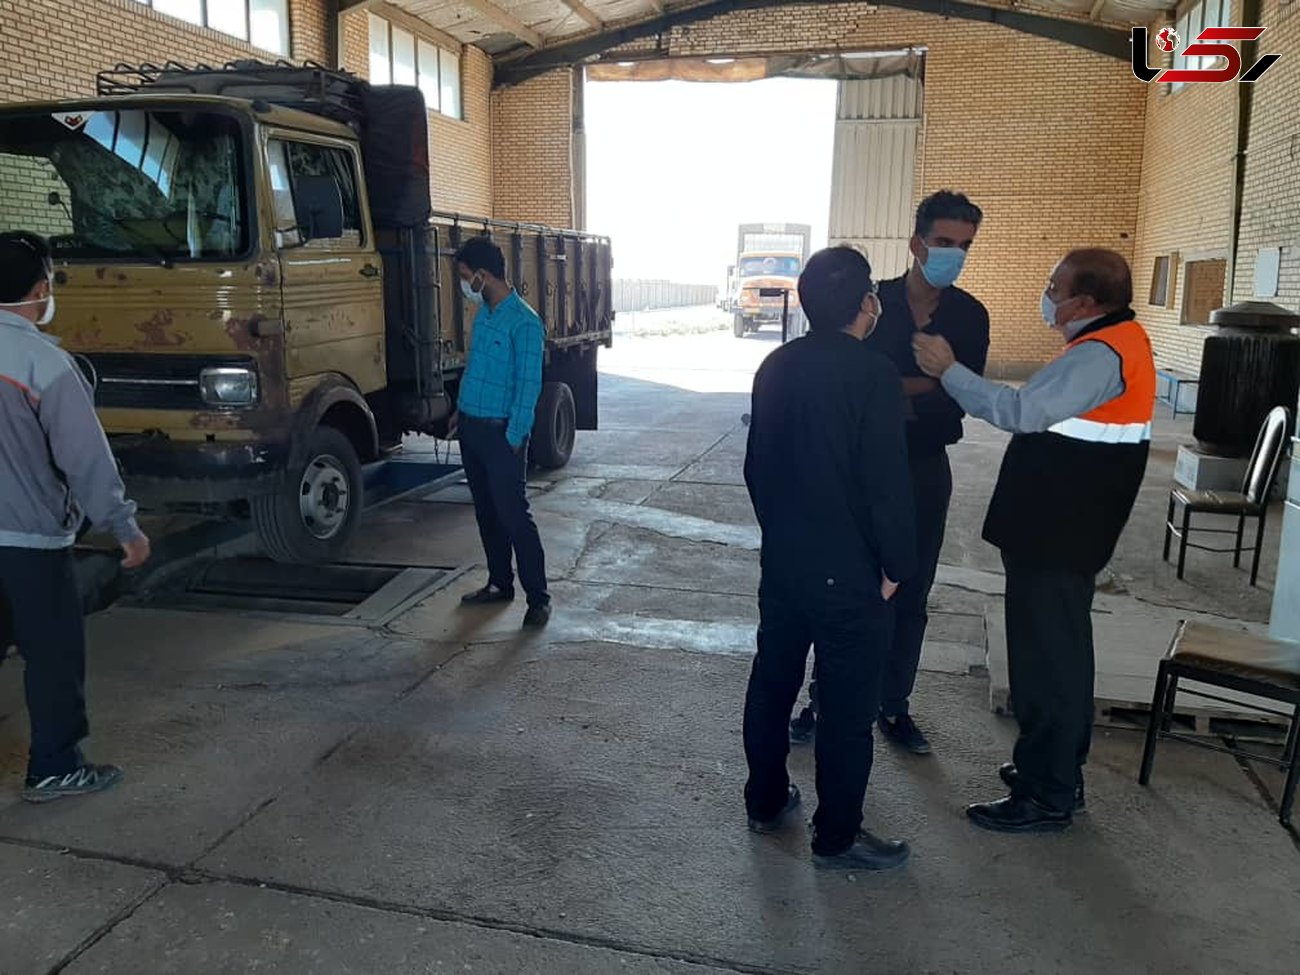 مراکز معاینه فنی خودرو استان قزوین زیر ذره بین کارشناسان محیط زیست